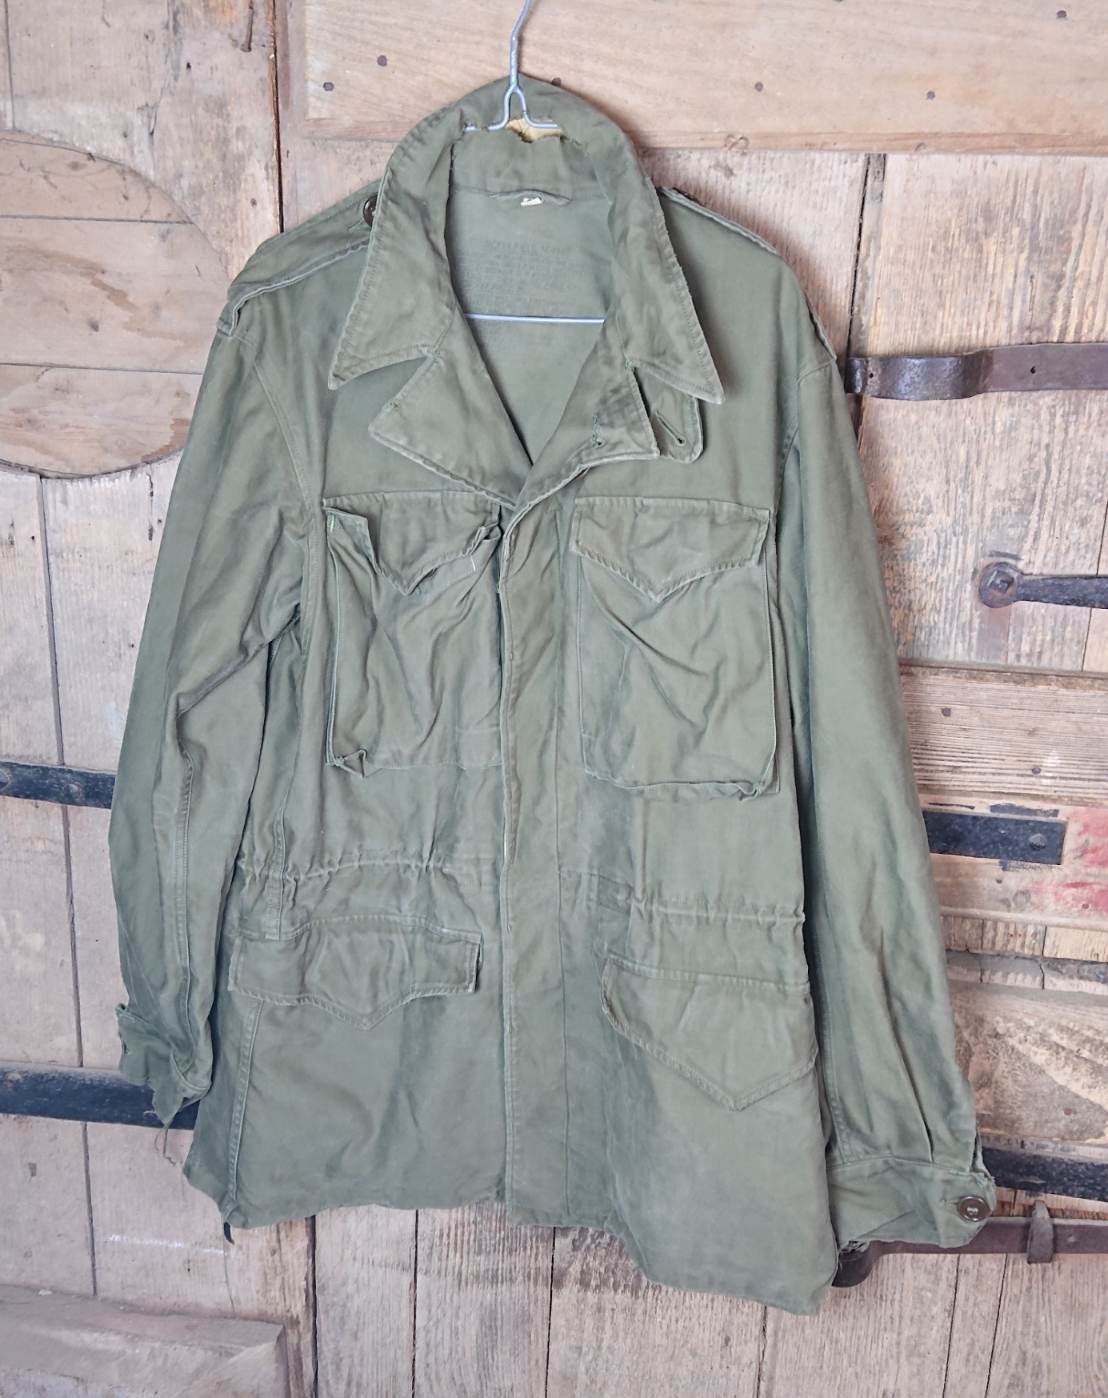 HdS Militaria Veste US m43 / ww2 US m43 jacket